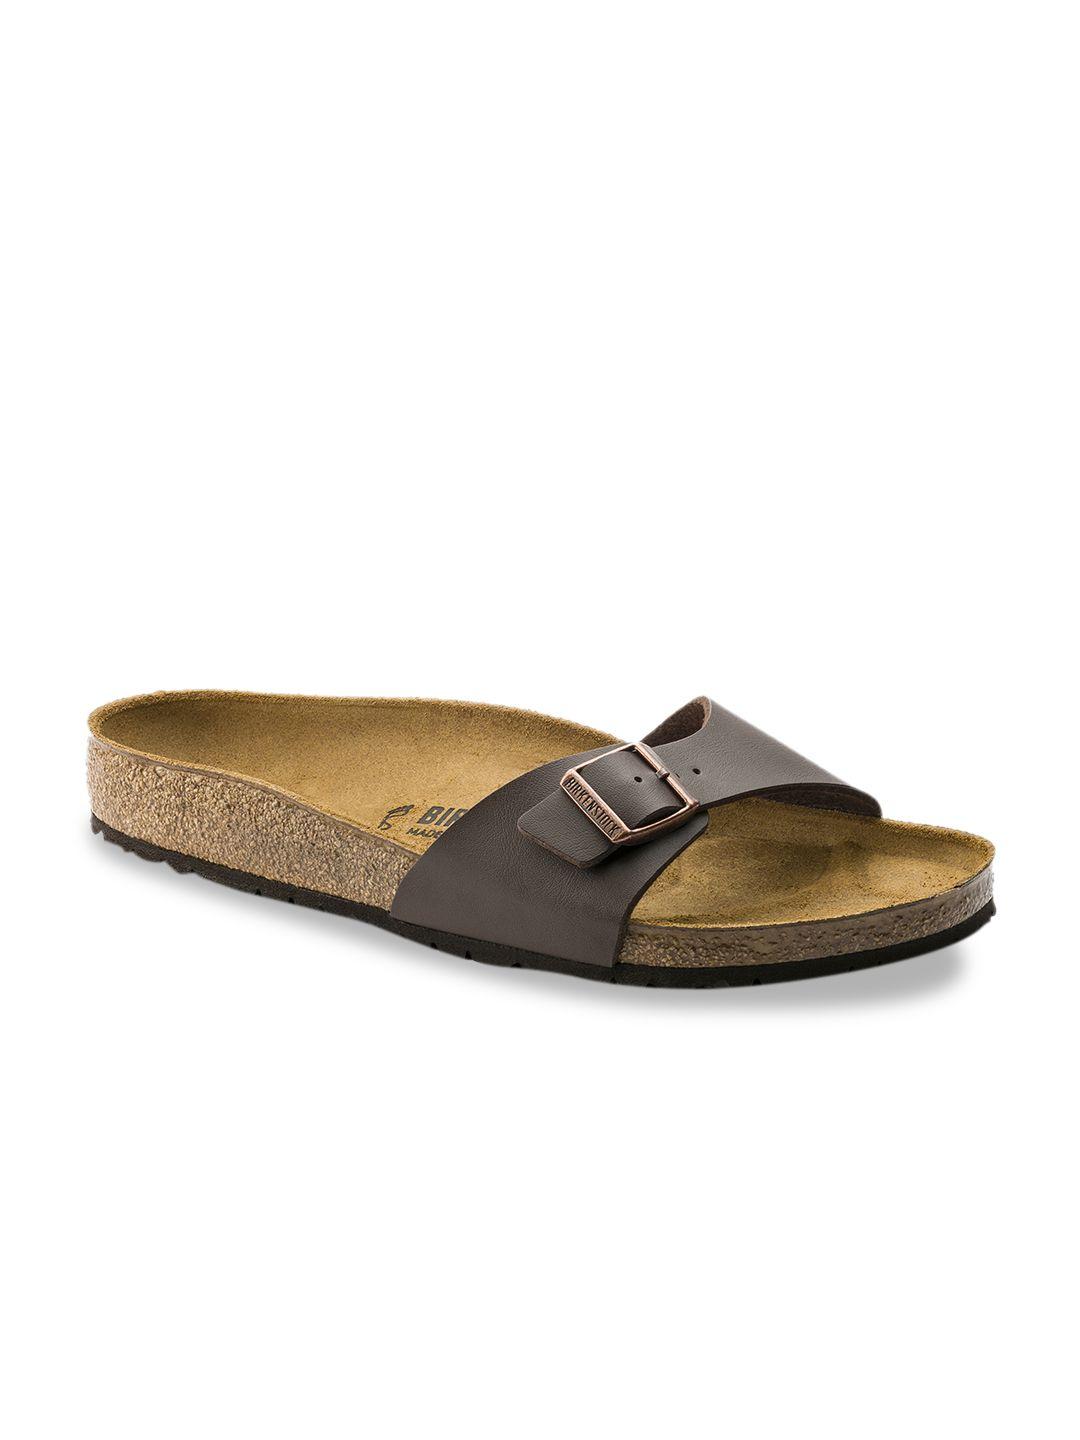 birkenstock unisex brown madrid birko-flor narrow width sandals